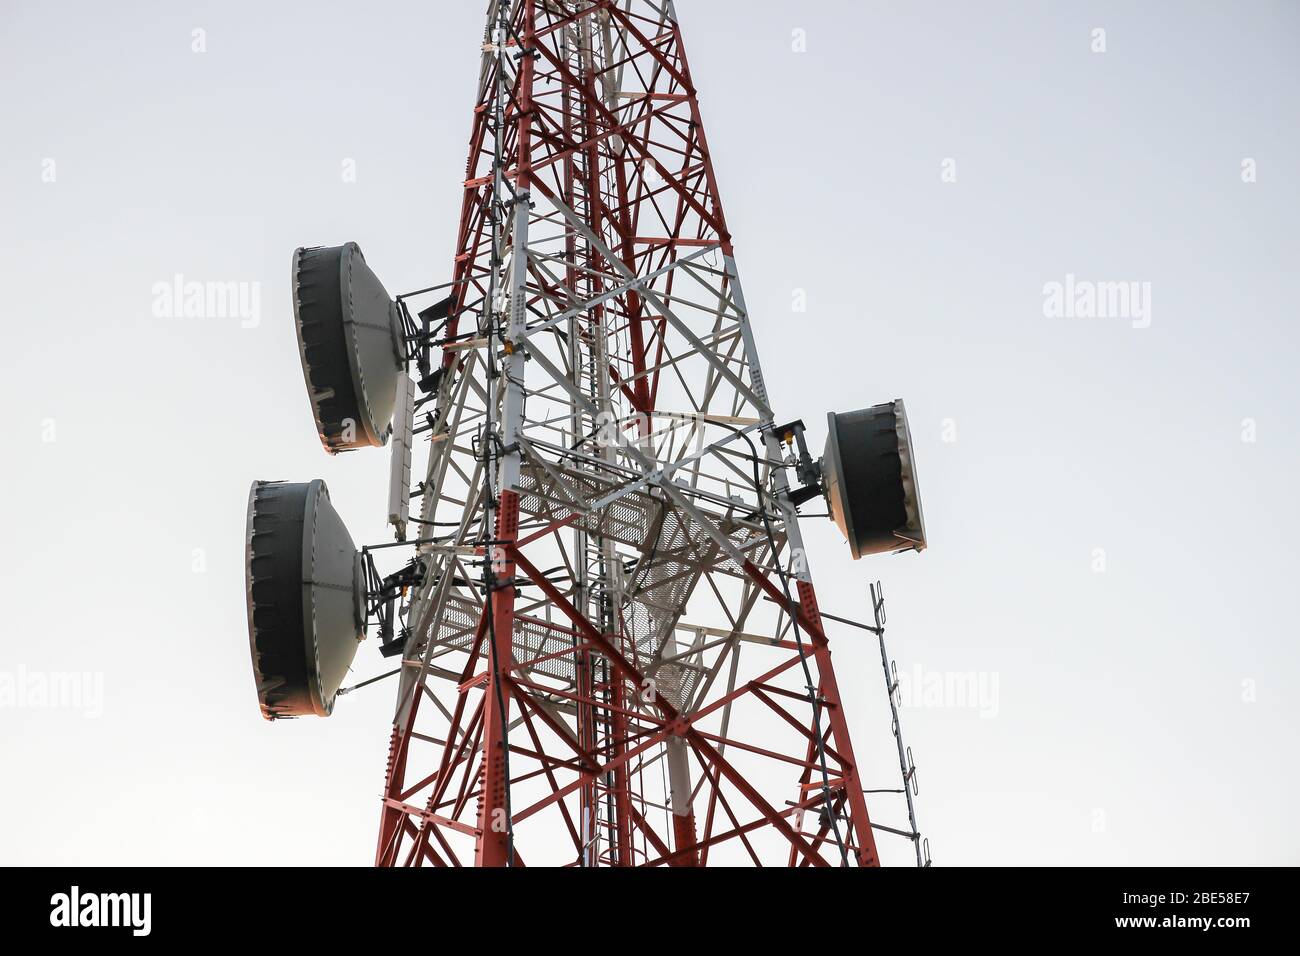 Basisstation oder Basisstation mit Mobilfunk. Telekommunikationsturm. Sender Für Drahtlose Kommunikationsantenne. 3G-, 4G- und 5G-Mobilfunkstandort. Stockfoto